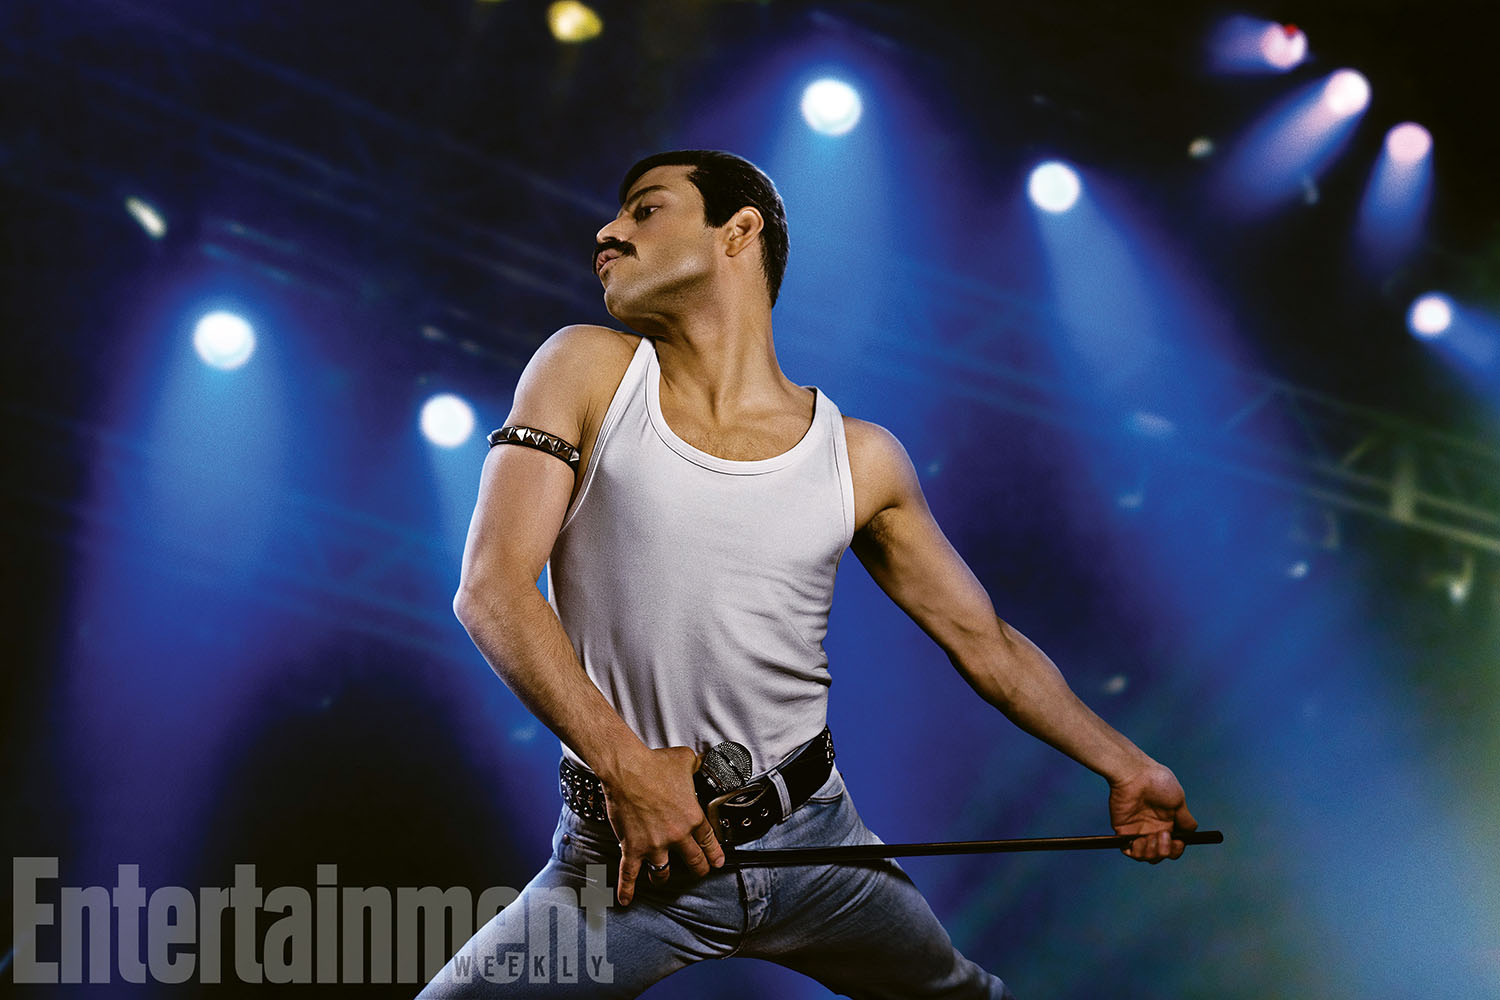 Primer vistazo de Rami Malek como Freddie Mercury